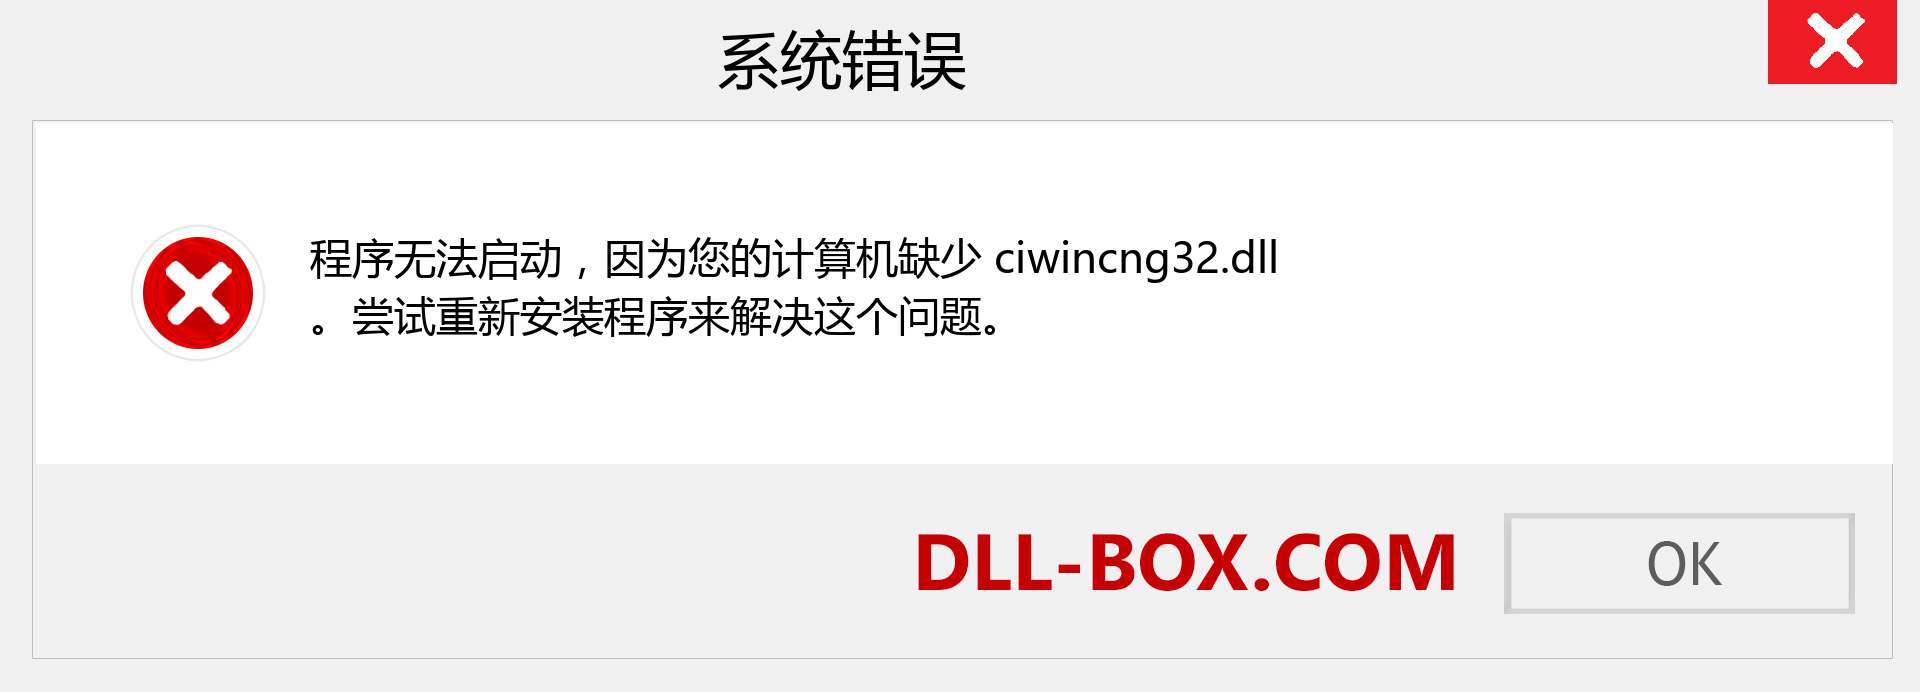 ciwincng32.dll 文件丢失？。 适用于 Windows 7、8、10 的下载 - 修复 Windows、照片、图像上的 ciwincng32 dll 丢失错误